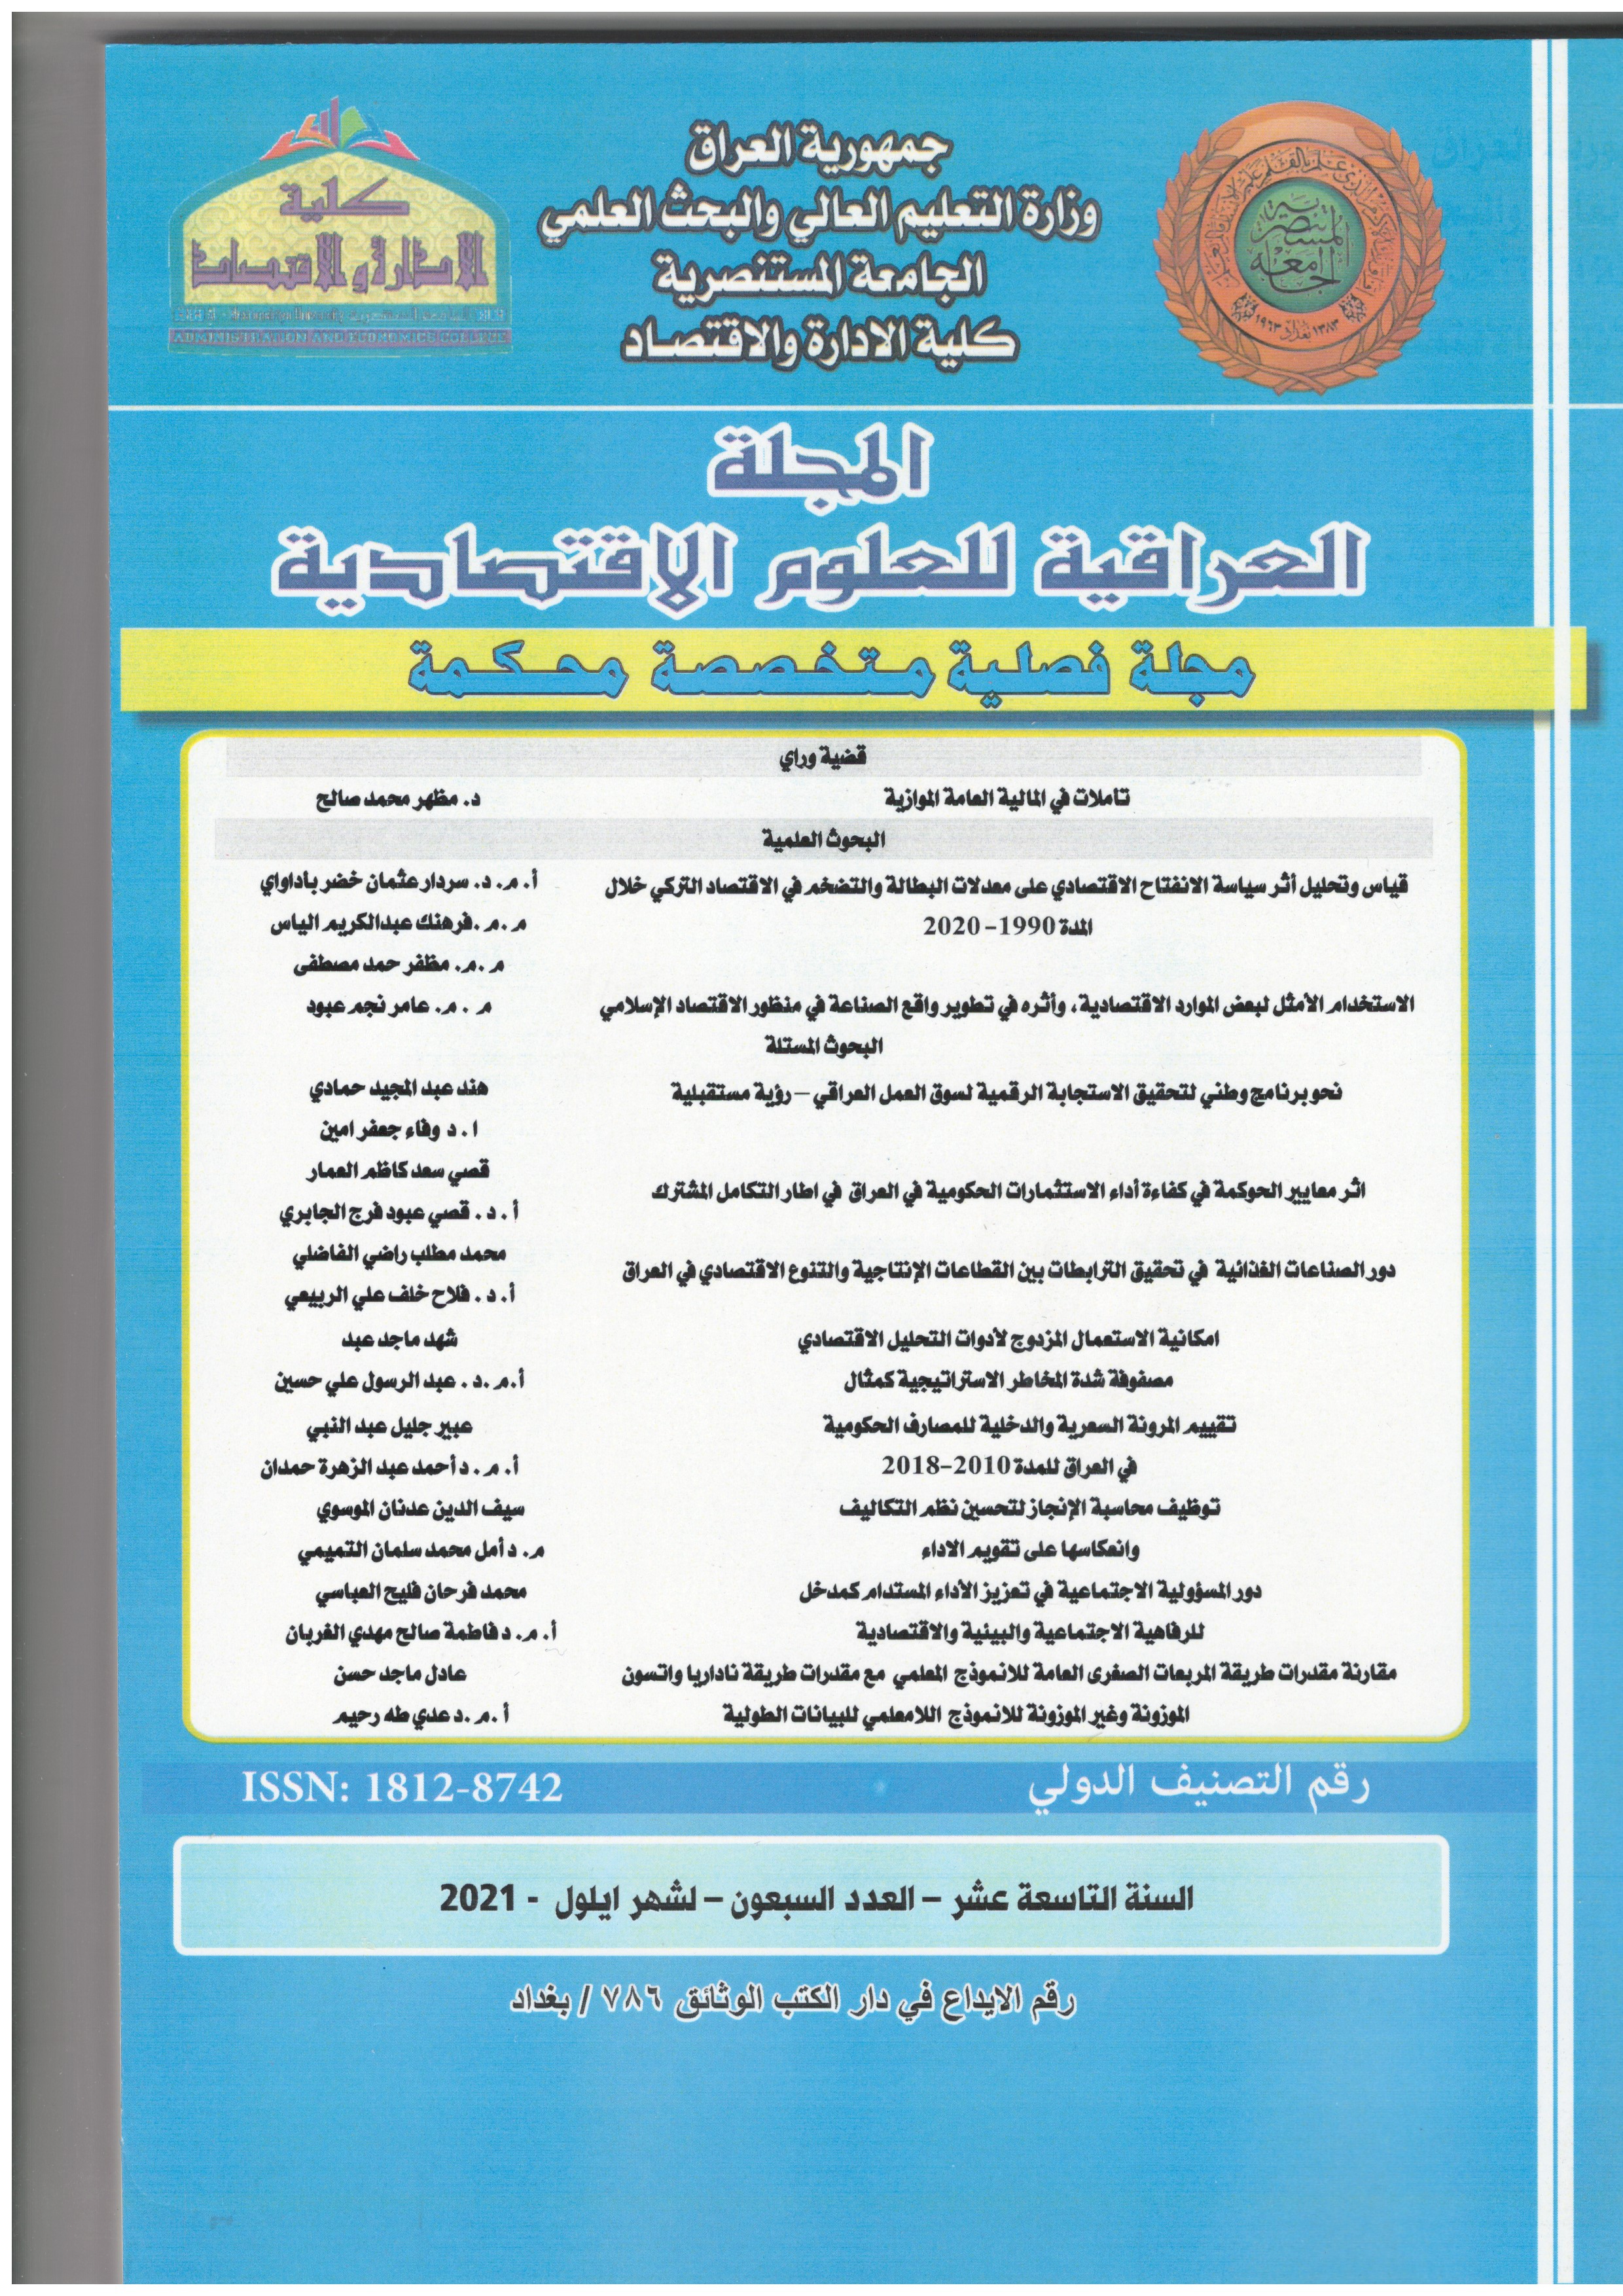 					معاينة مجلد 19 عدد 70 (2021): المجلة العراقية للعلوم الاقتصادية 
				